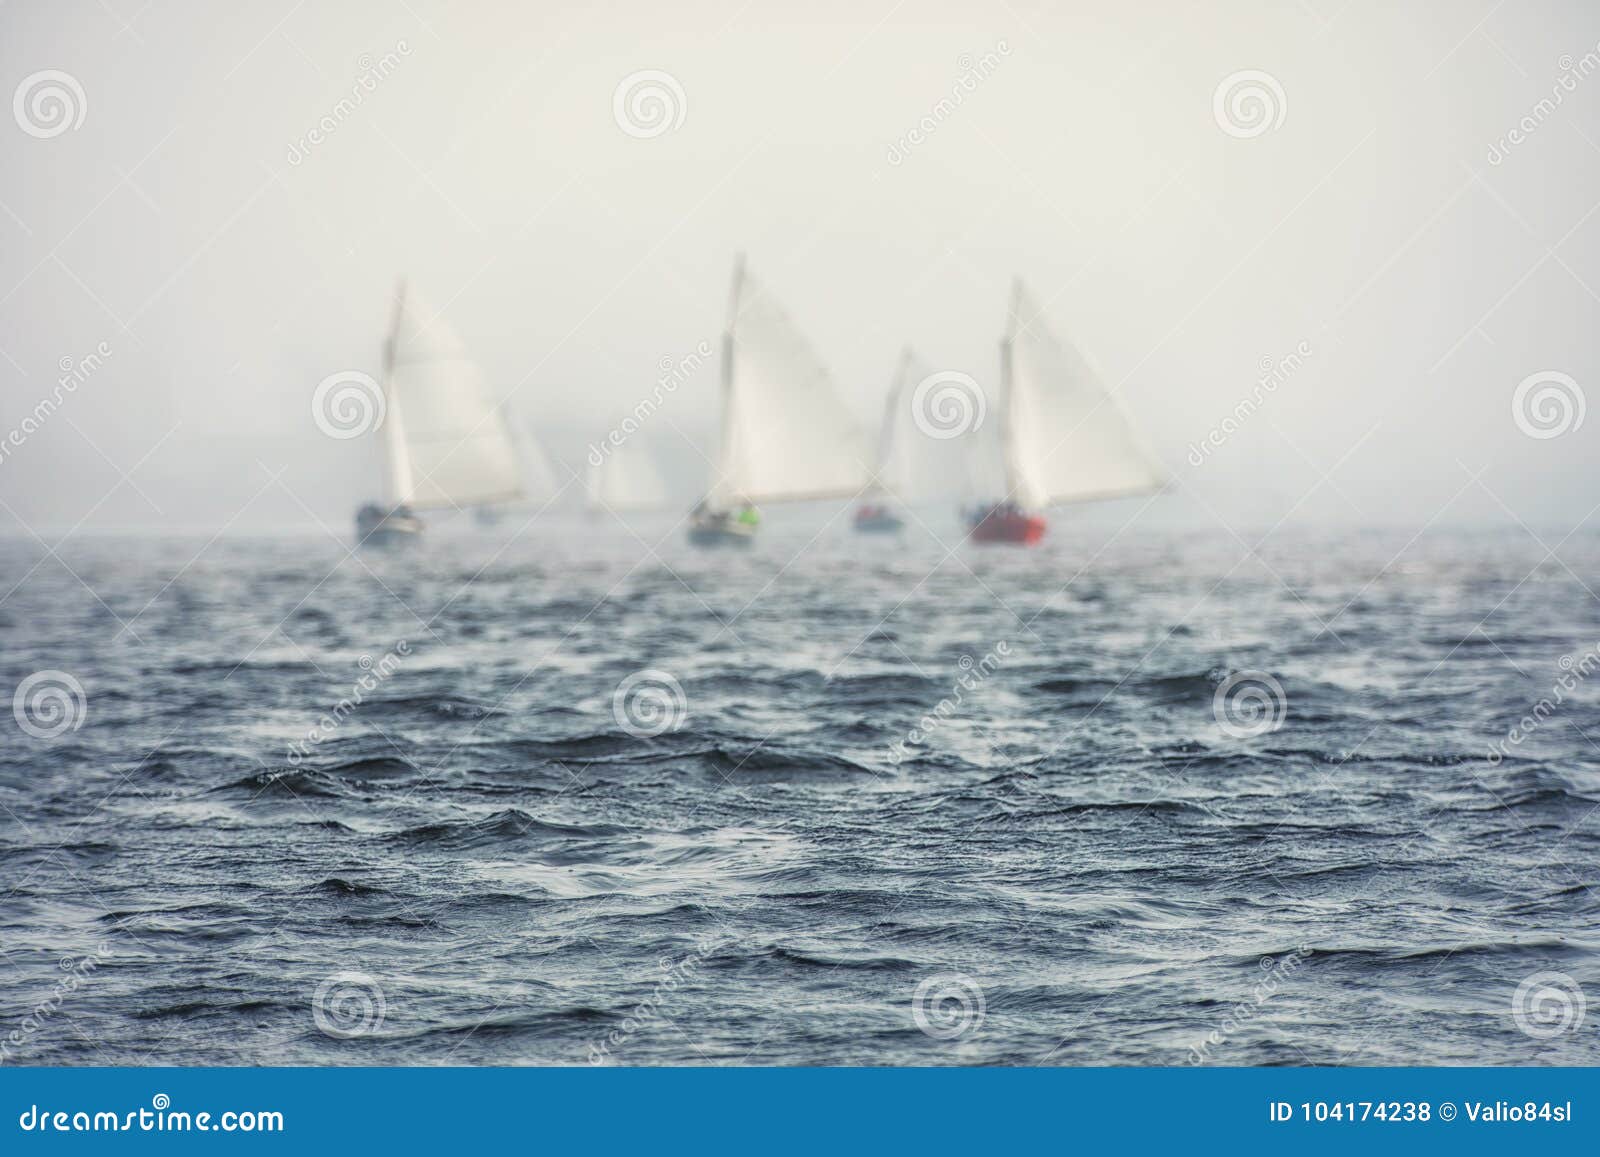 Regata Delle Barche A Vela Con Le Vele Bianche Nel Mare Fotografia Stock Immagine Di Regatta Lifestyle